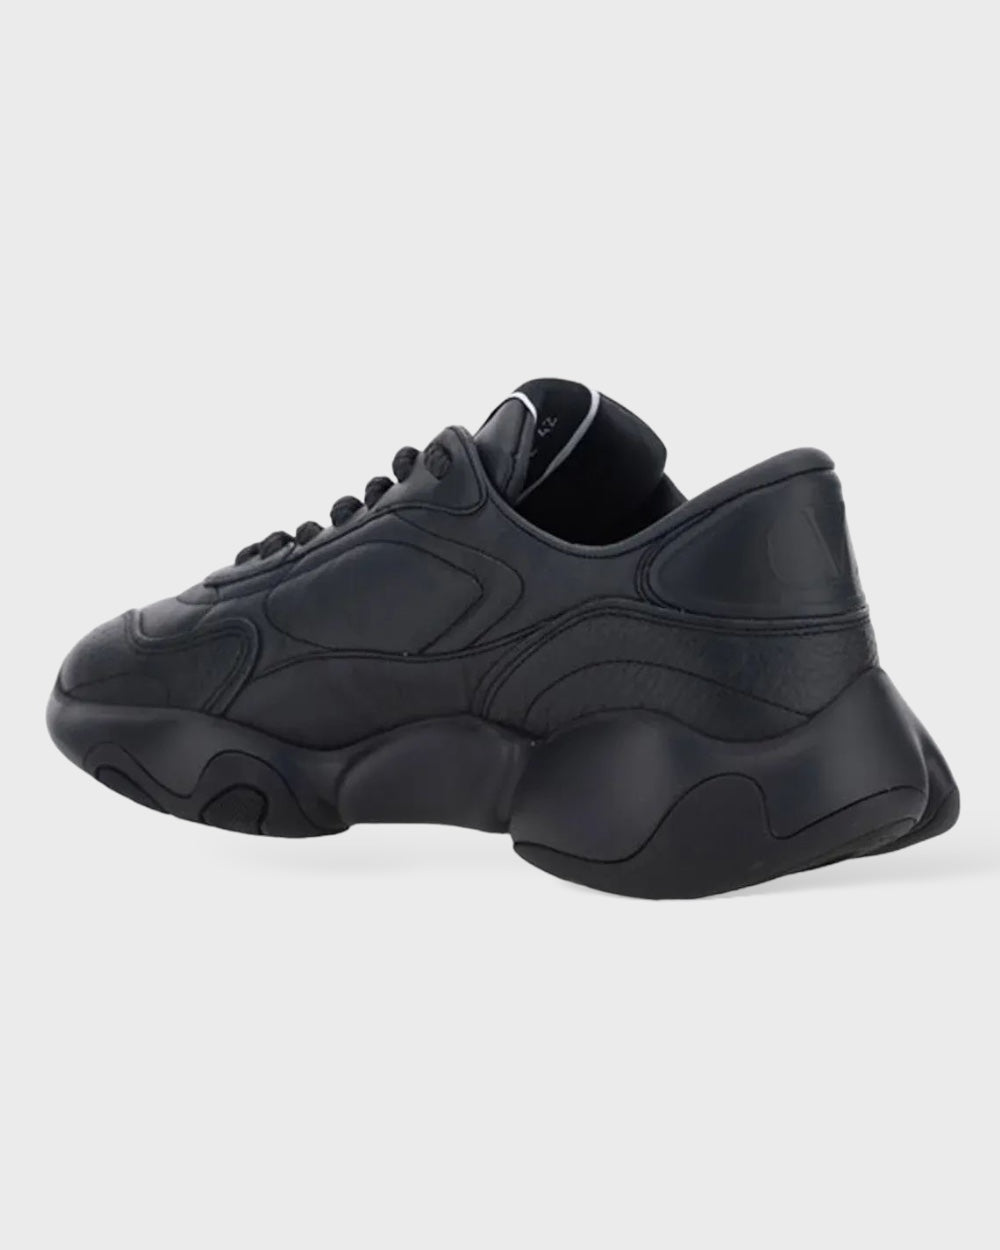 Valentino Black Calf Leather Garavani Sneakers